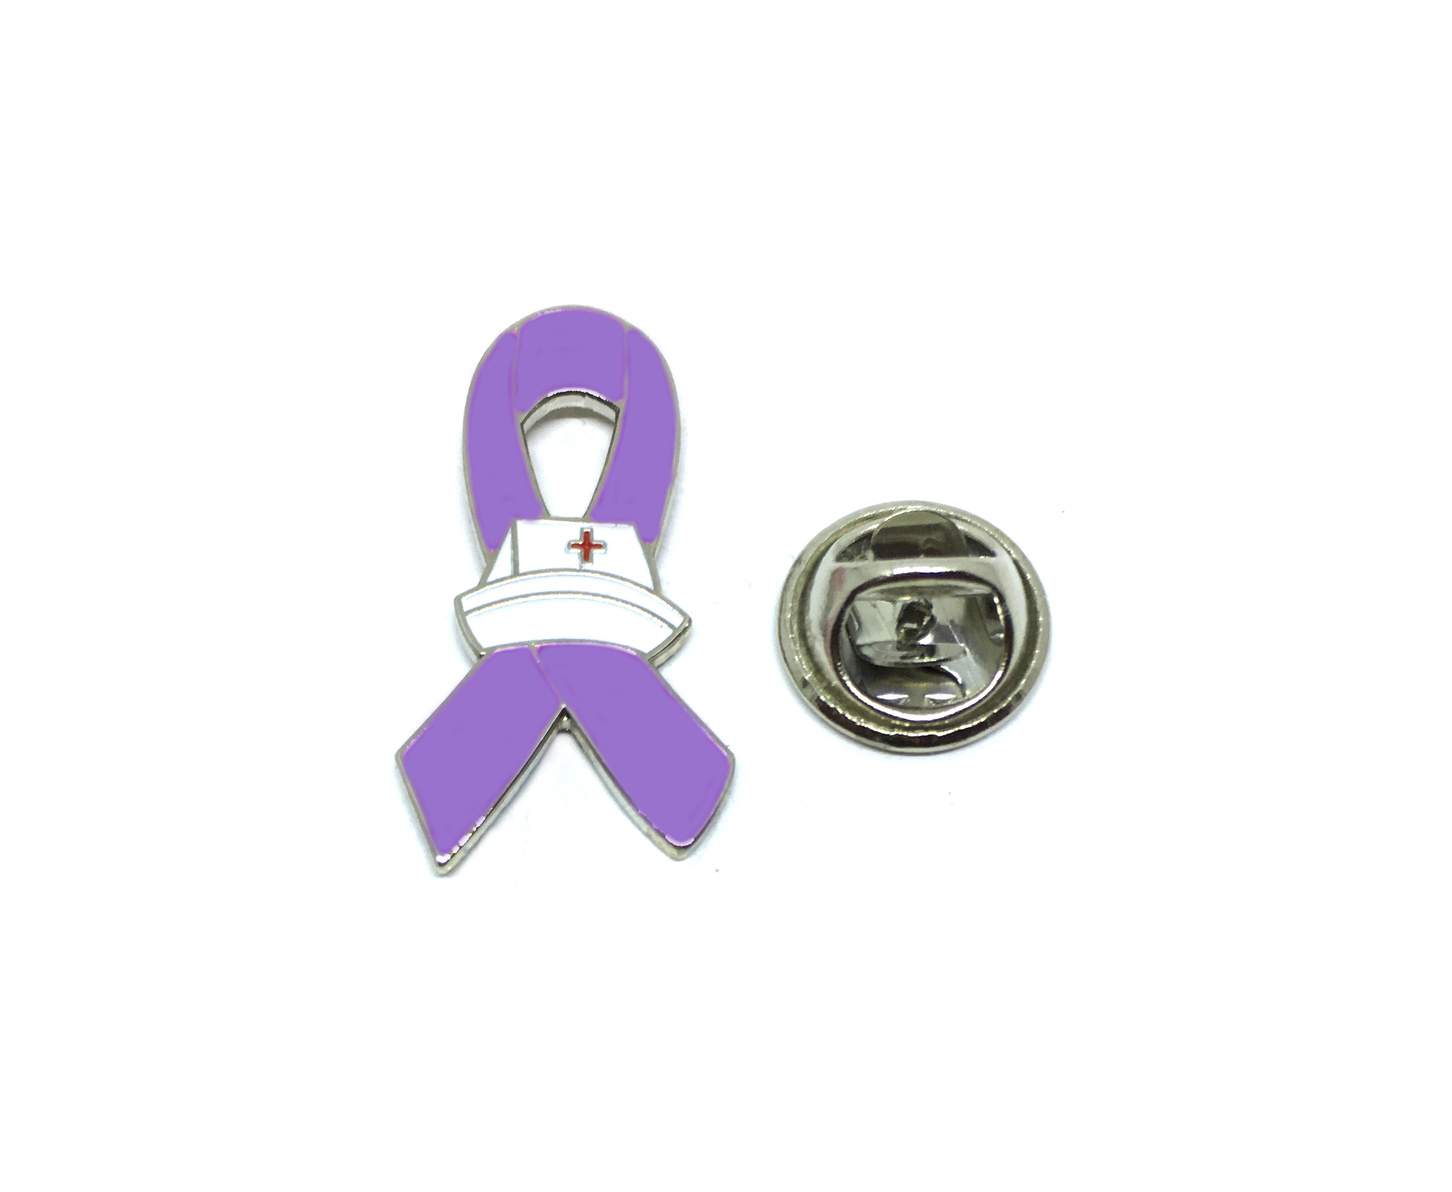 Cancer Awareness Ribbon Pins